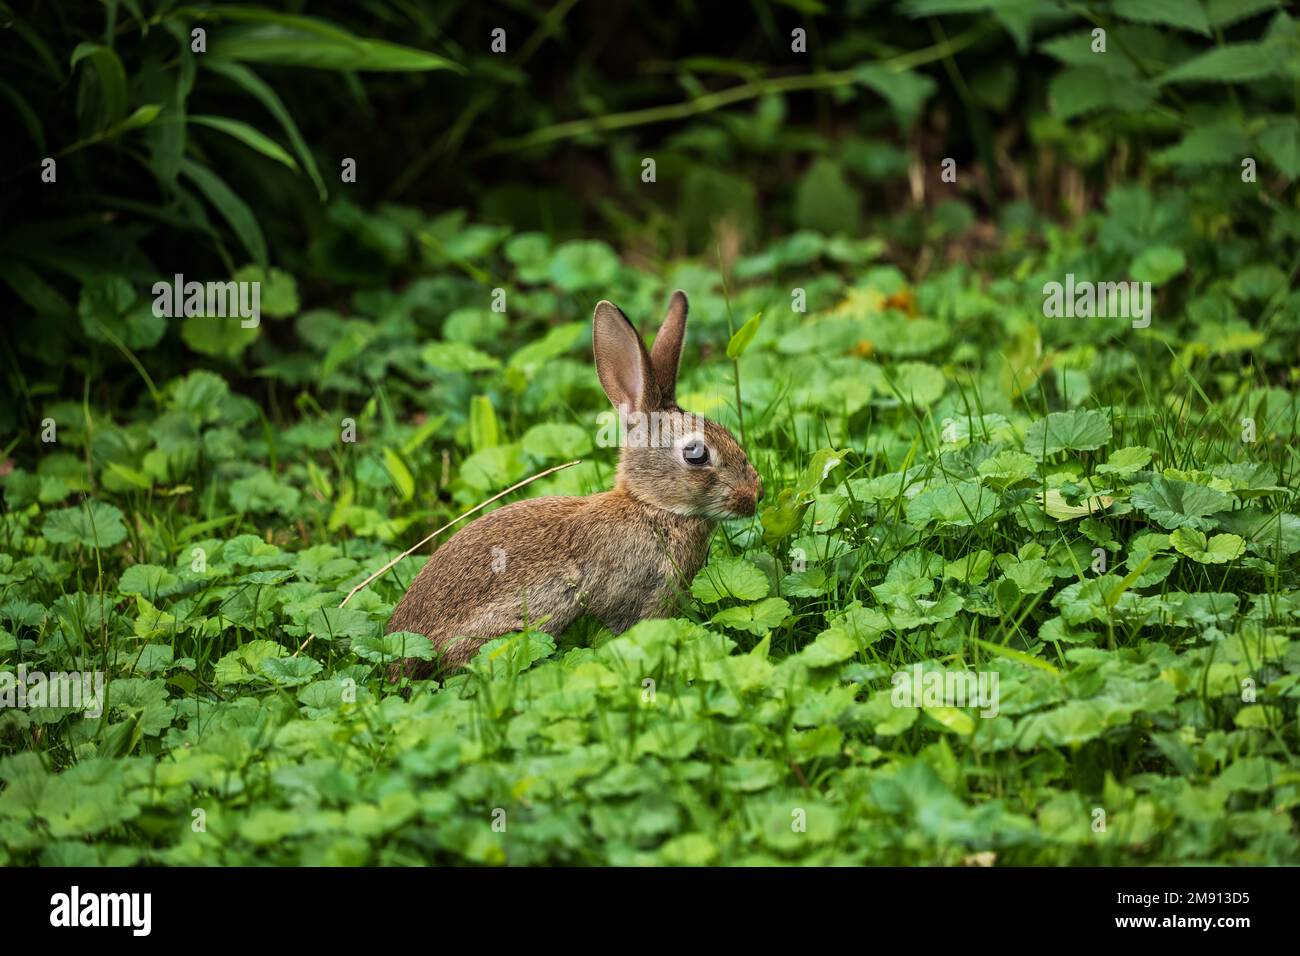 Lapin sauvage dans un pré vert, jeune lapin juvénile de la famille des Leporidae. Banque D'Images